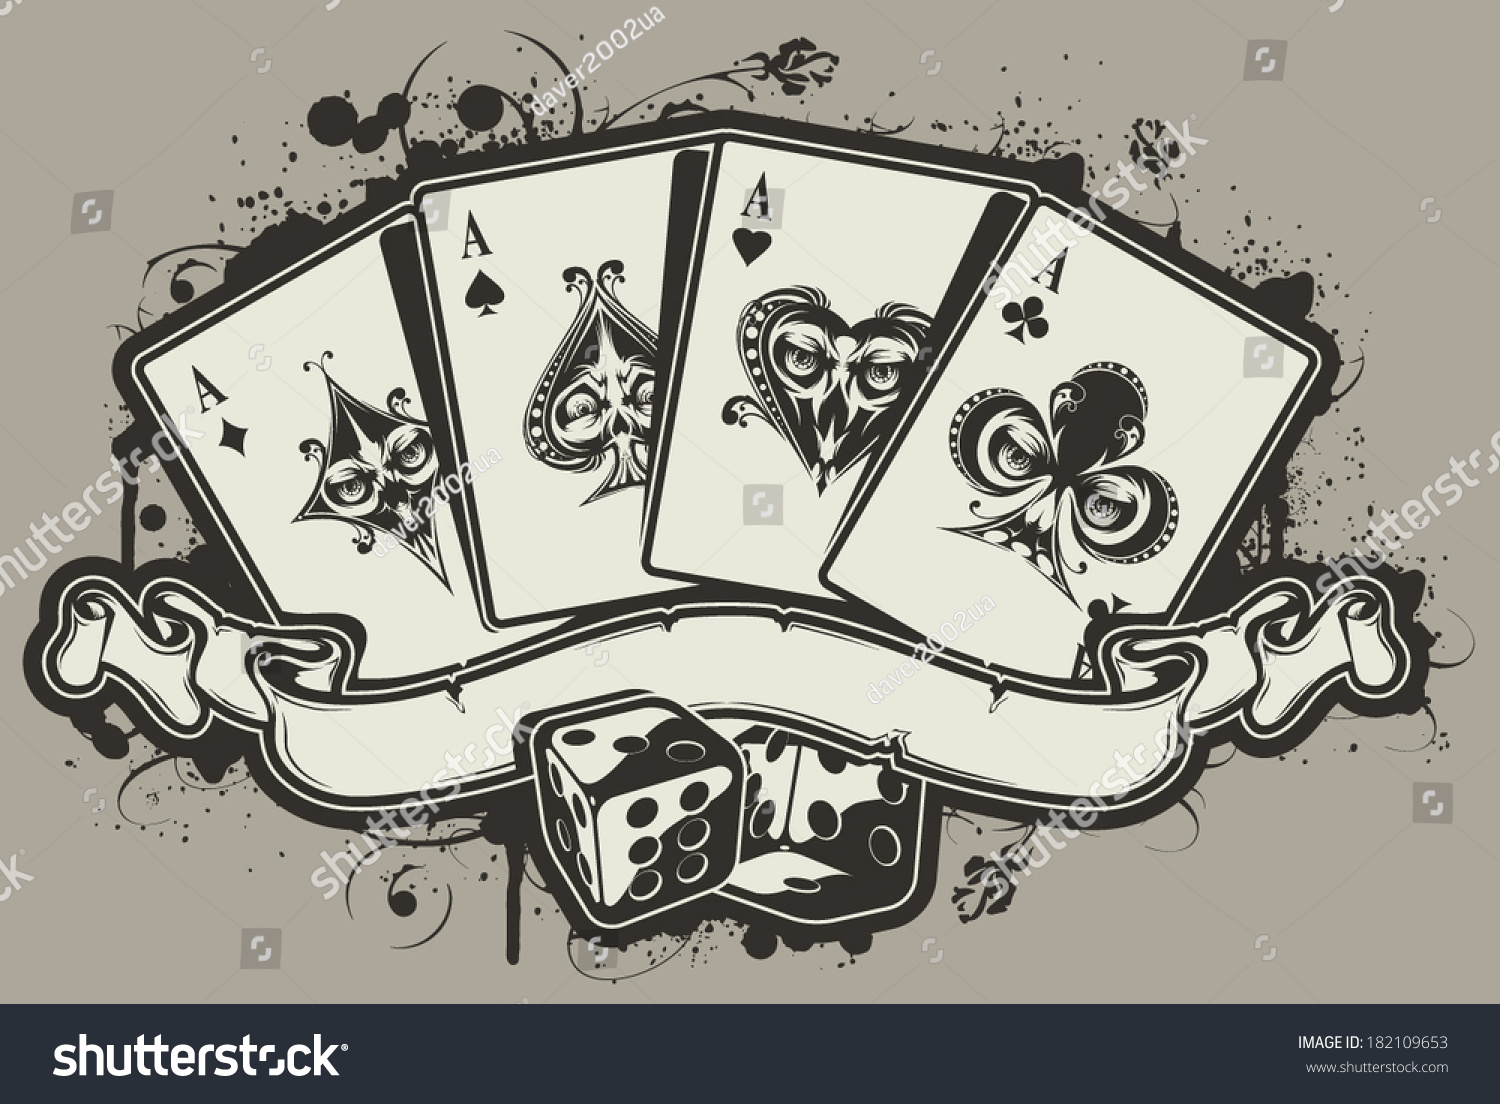 Эскизы игральных карт